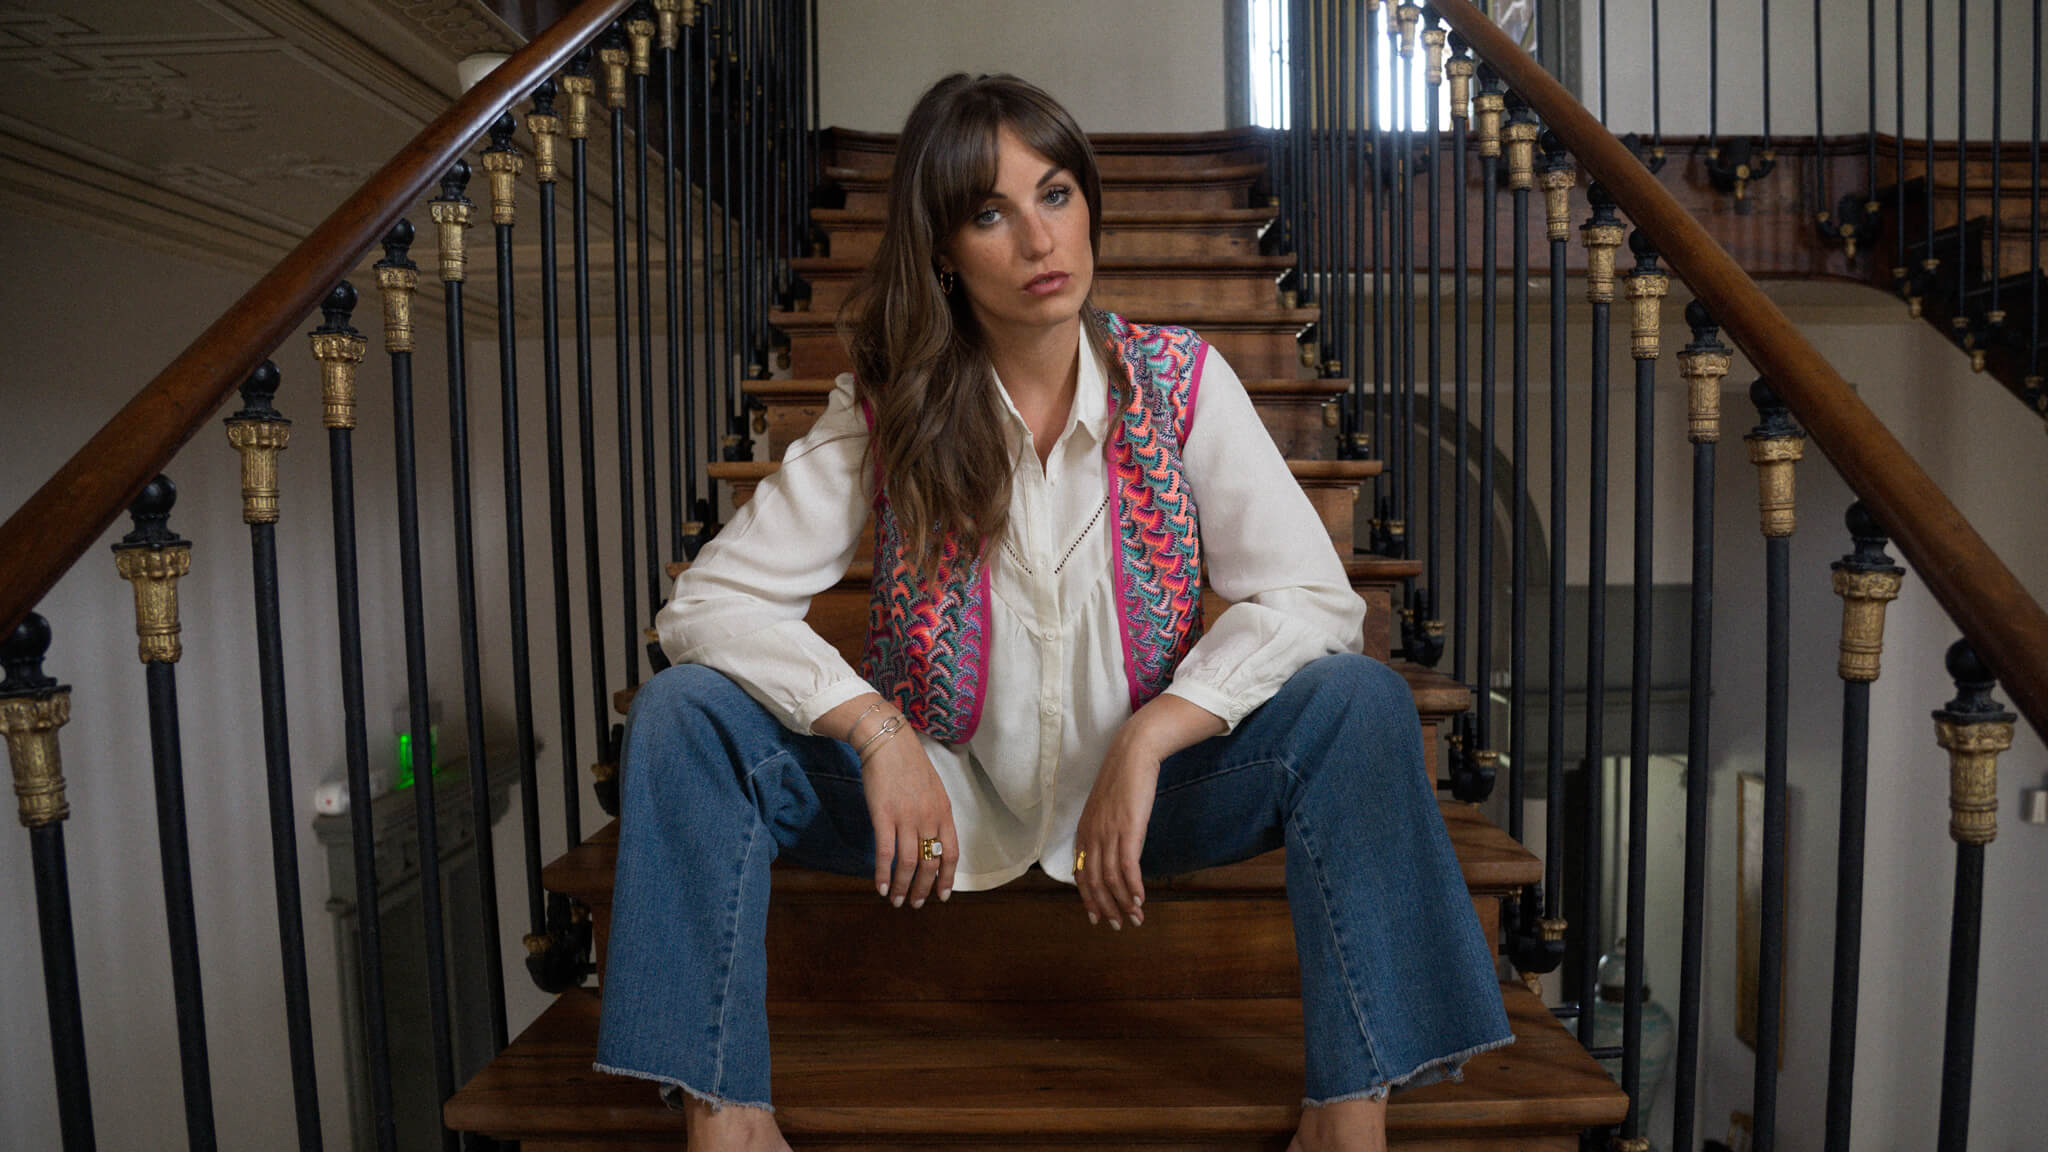 Modèle dans un escalier en bois qui porte un gilet coloré, une chemise écru et un jean June&River